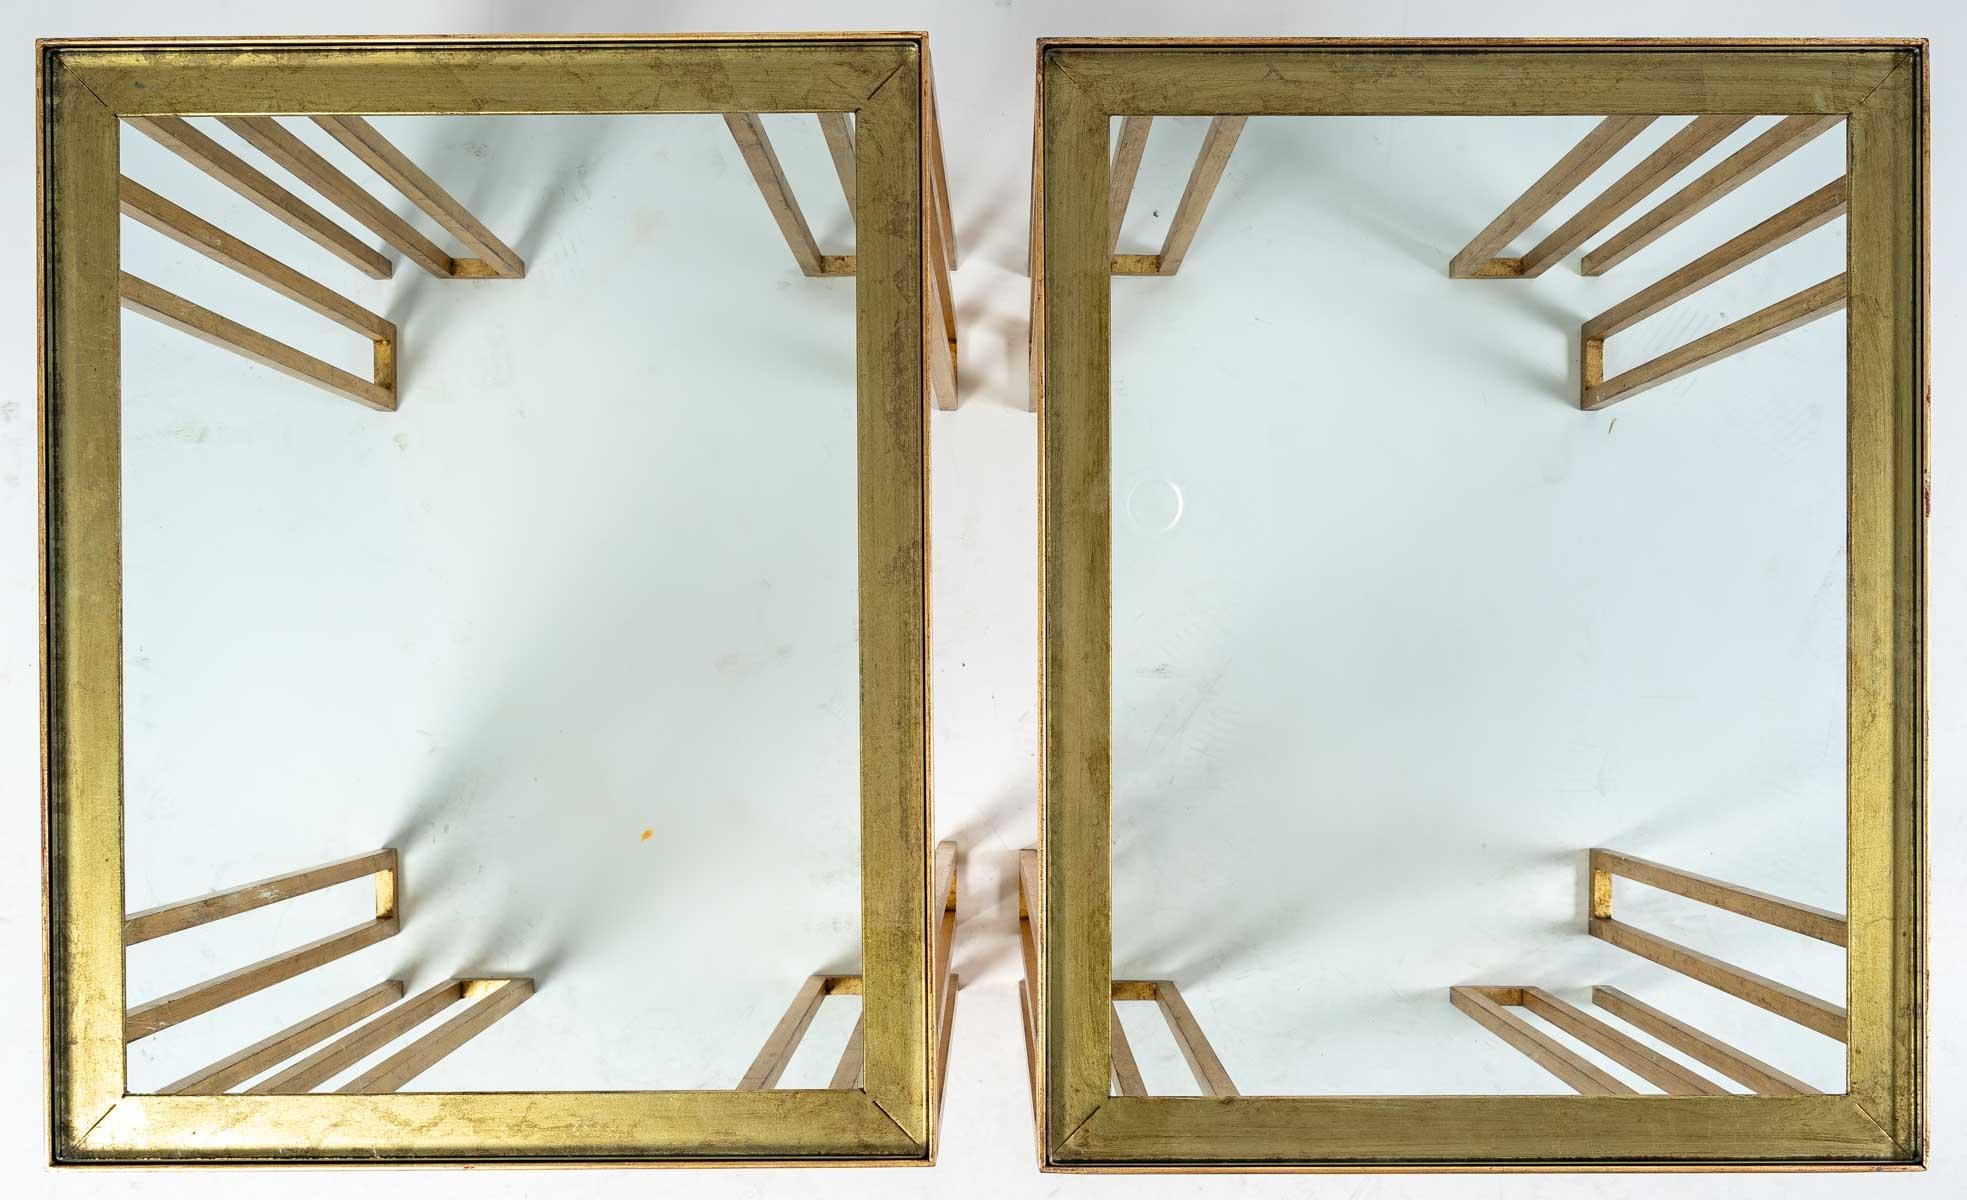 Paire de bouts de canapé ou tables d'appoint en fer doré, modèle de Jean Royère.
Production 1970 - 1980
Très bonne qualité, doré à la feuille d'or
Mesures : H : 59 cm, L : 61 cm, P : 48 cm
Jean Royère (1902 - 1981) est un décorateur français.